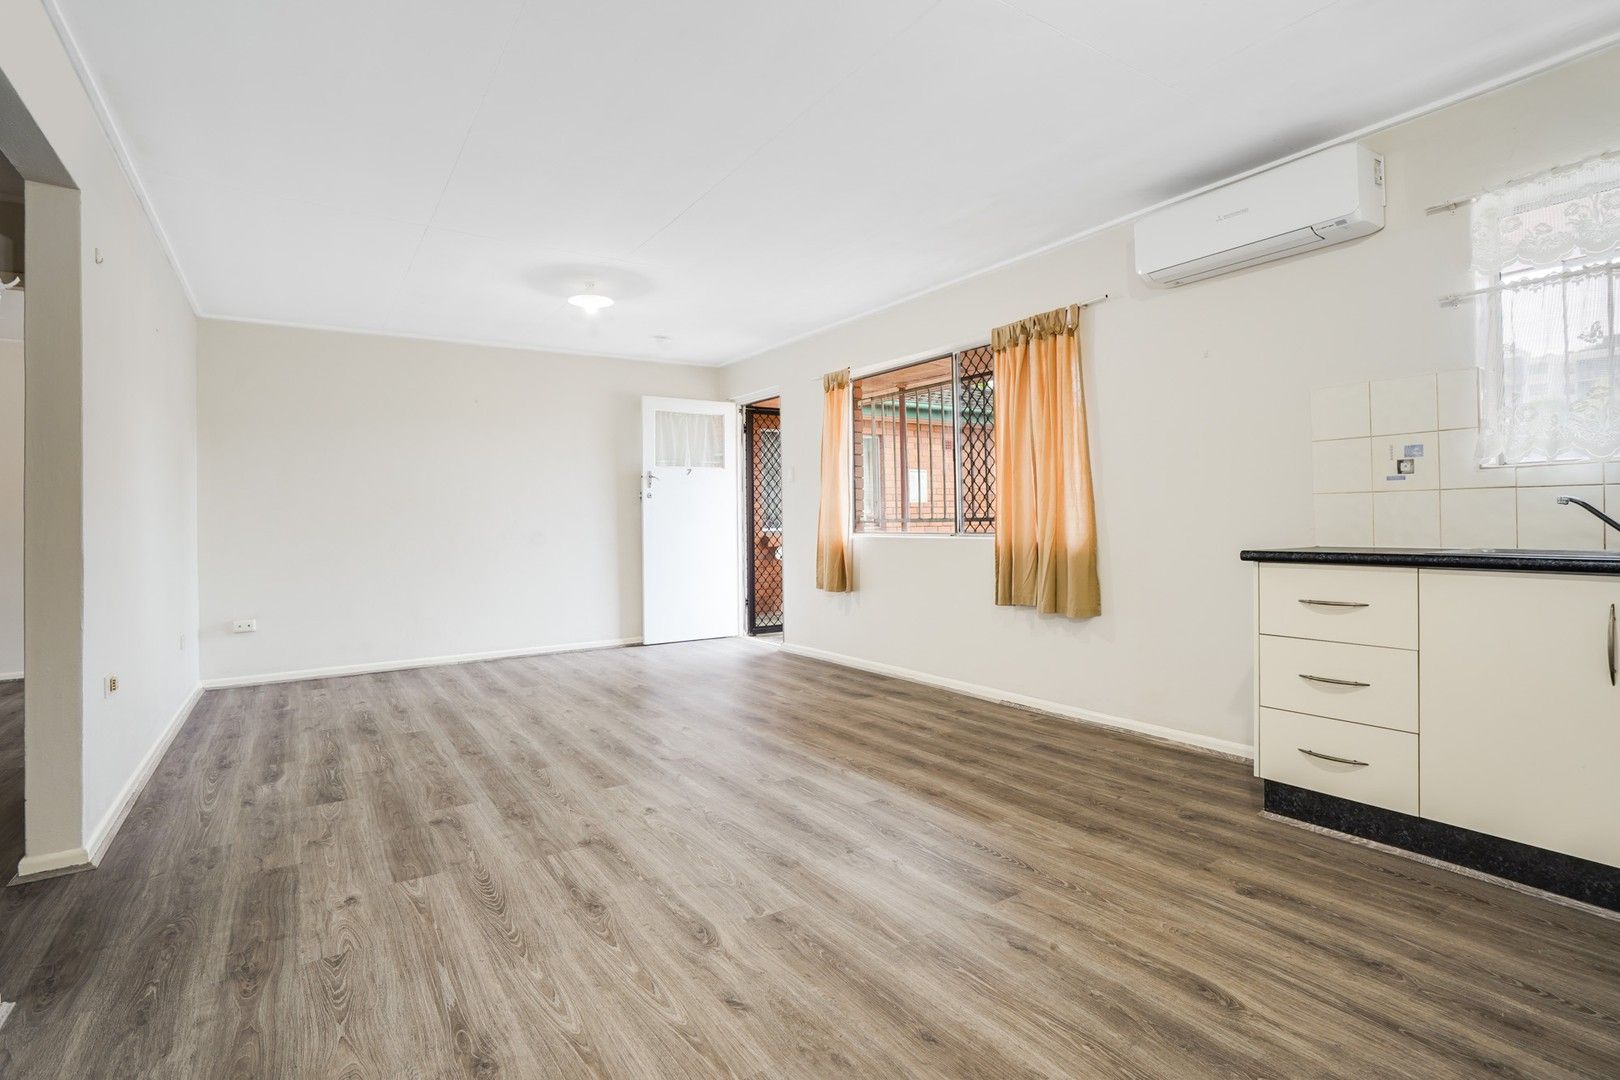 2 bedrooms Apartment / Unit / Flat in 7/11 Carl Street WOOLLOONGABBA QLD, 4102